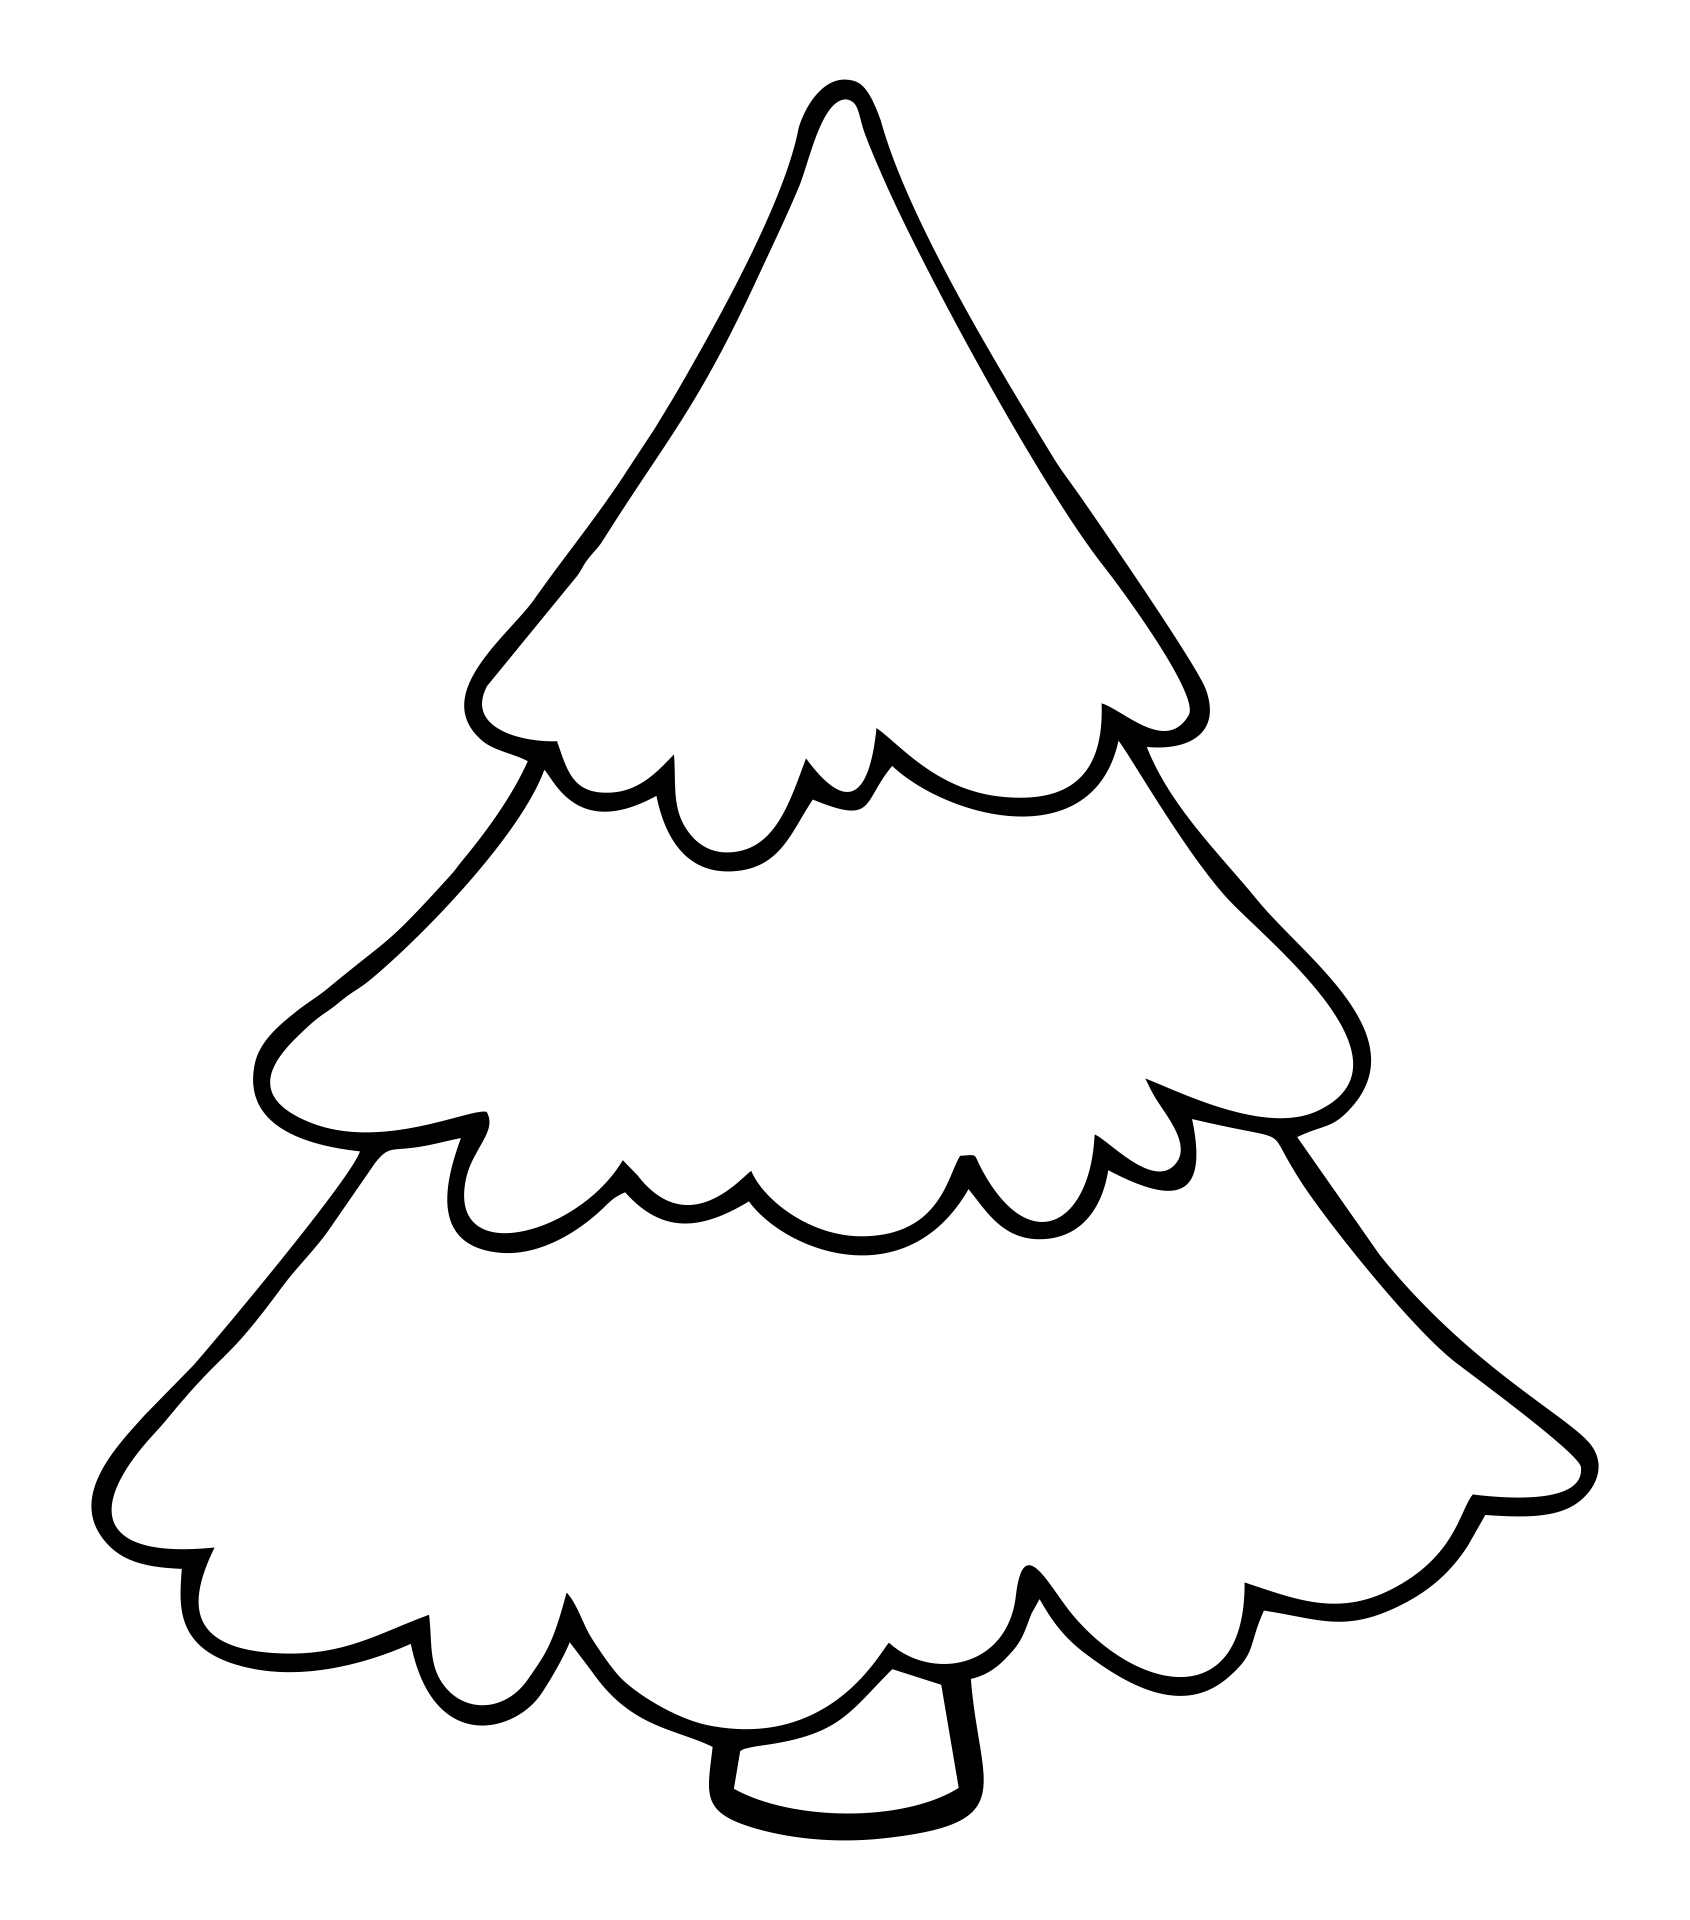 Free Printable Christmas Tree Images Printable Templates